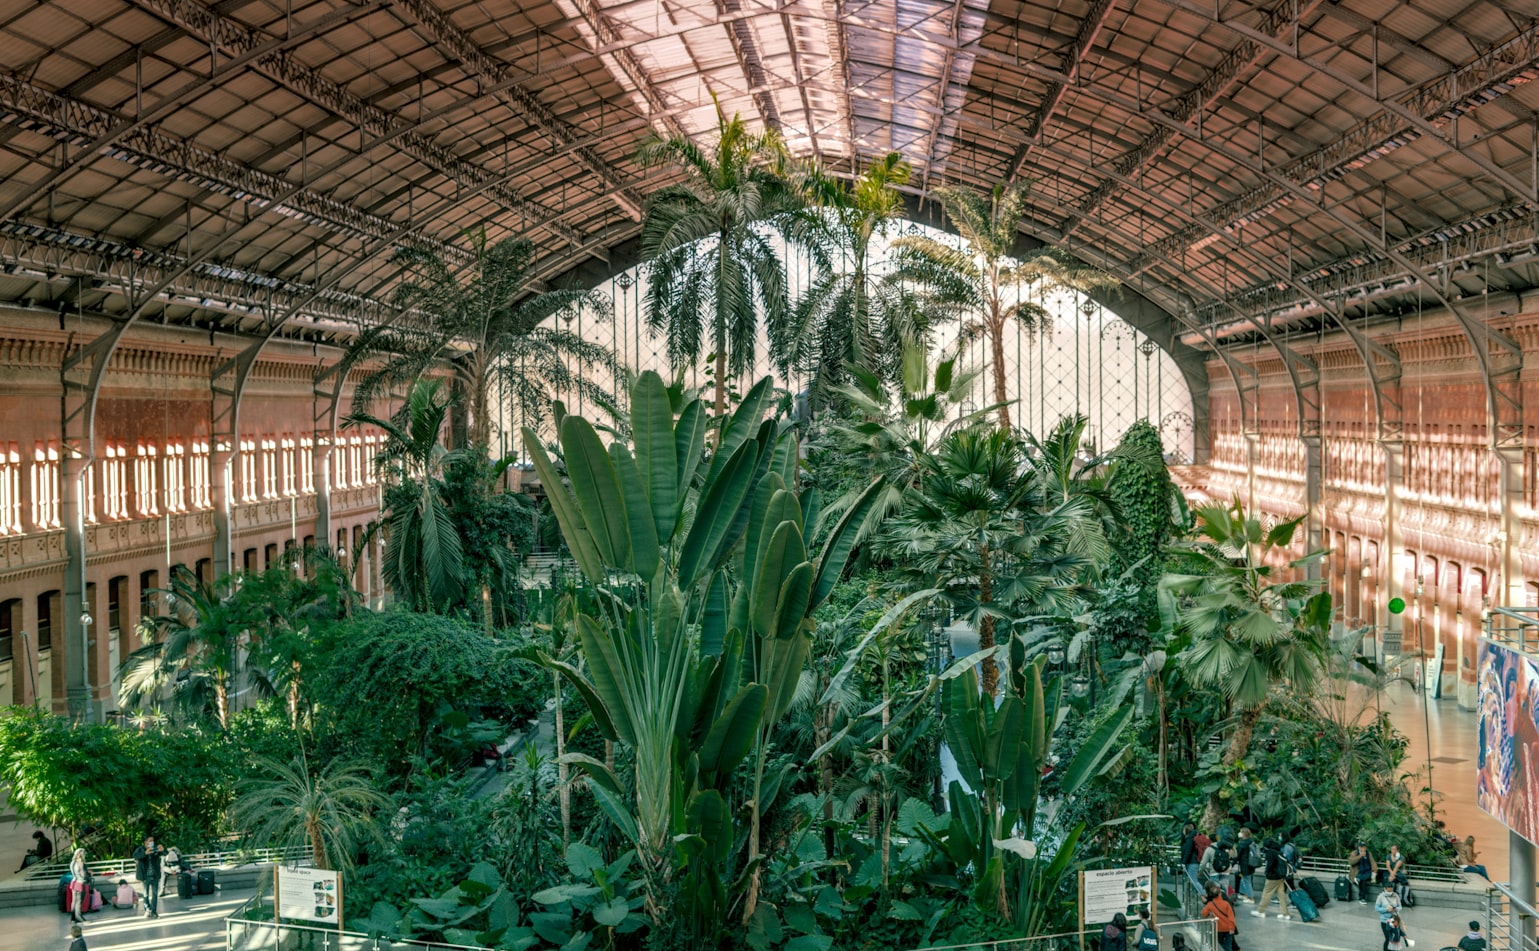 Piante tropicali nella stazione Atocha a Madrid